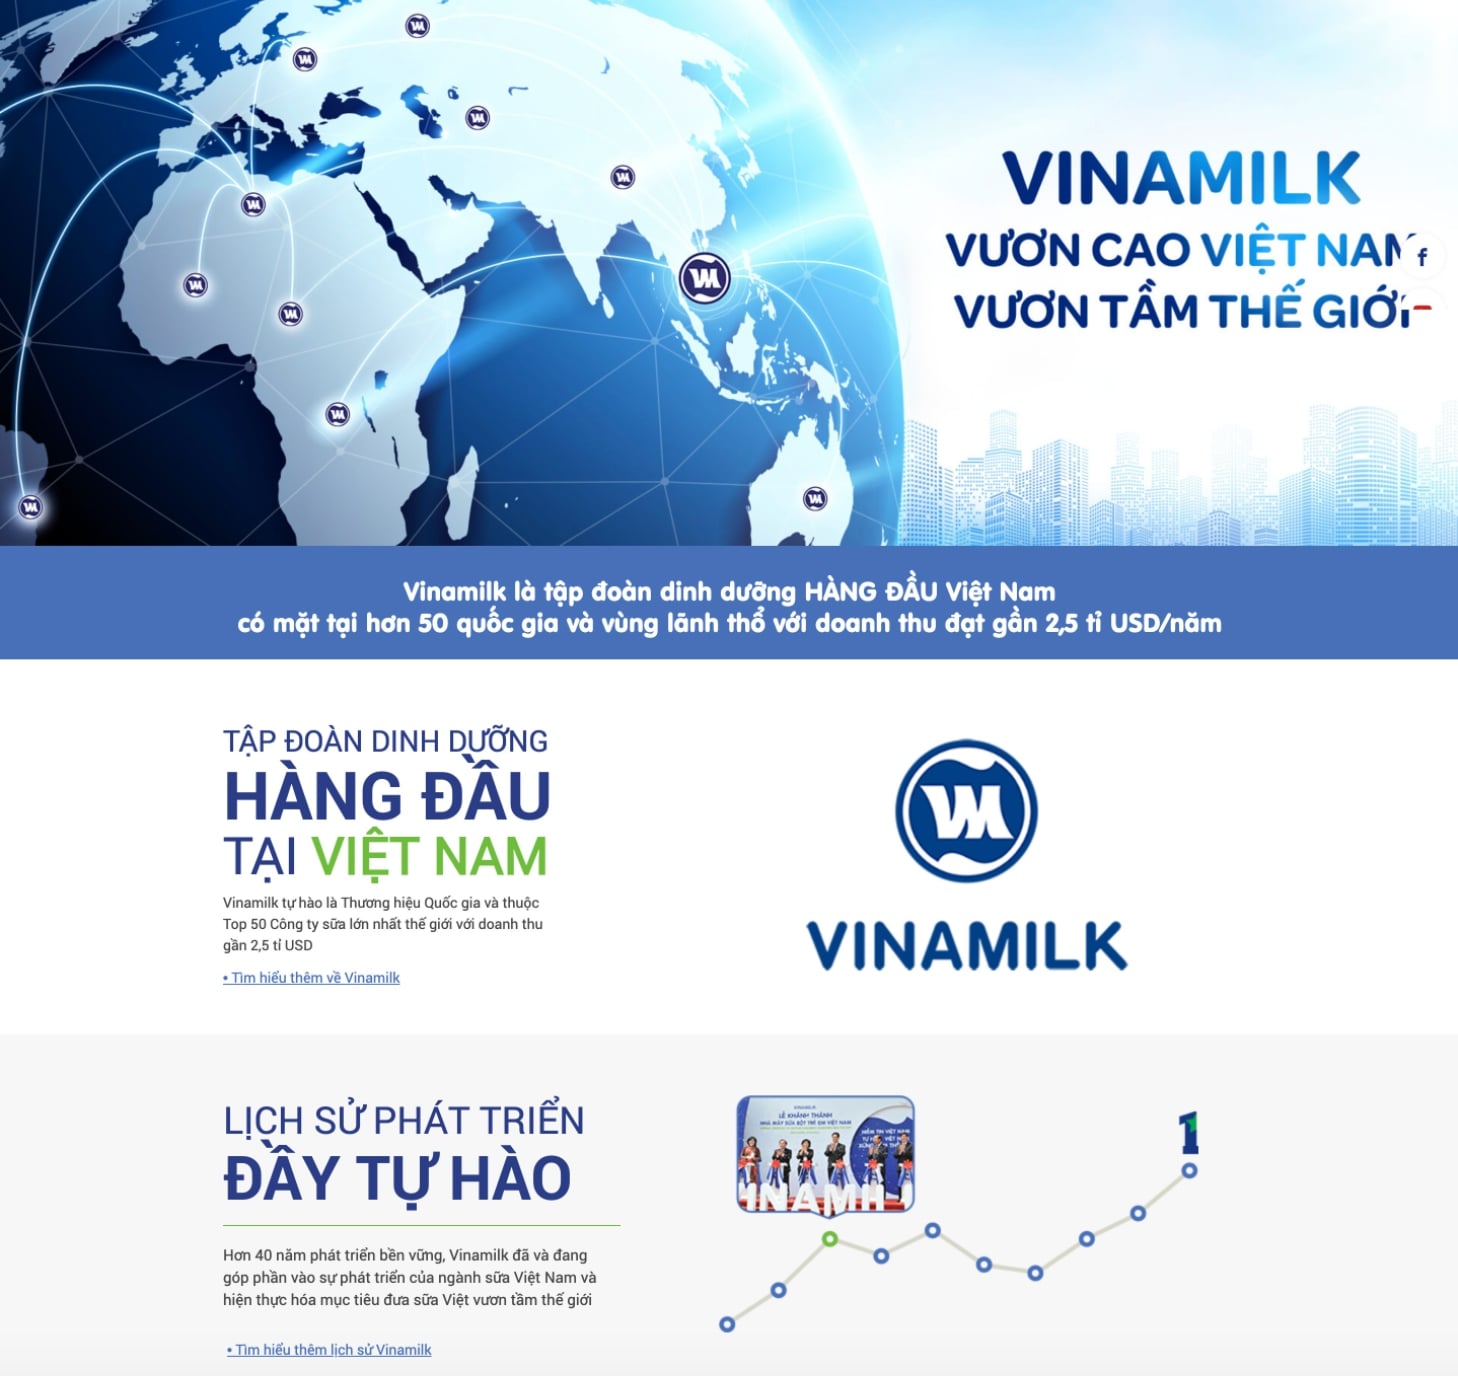 Bài viết giới thiệu về công ty hay nhất của thương hiệu Vinamilk